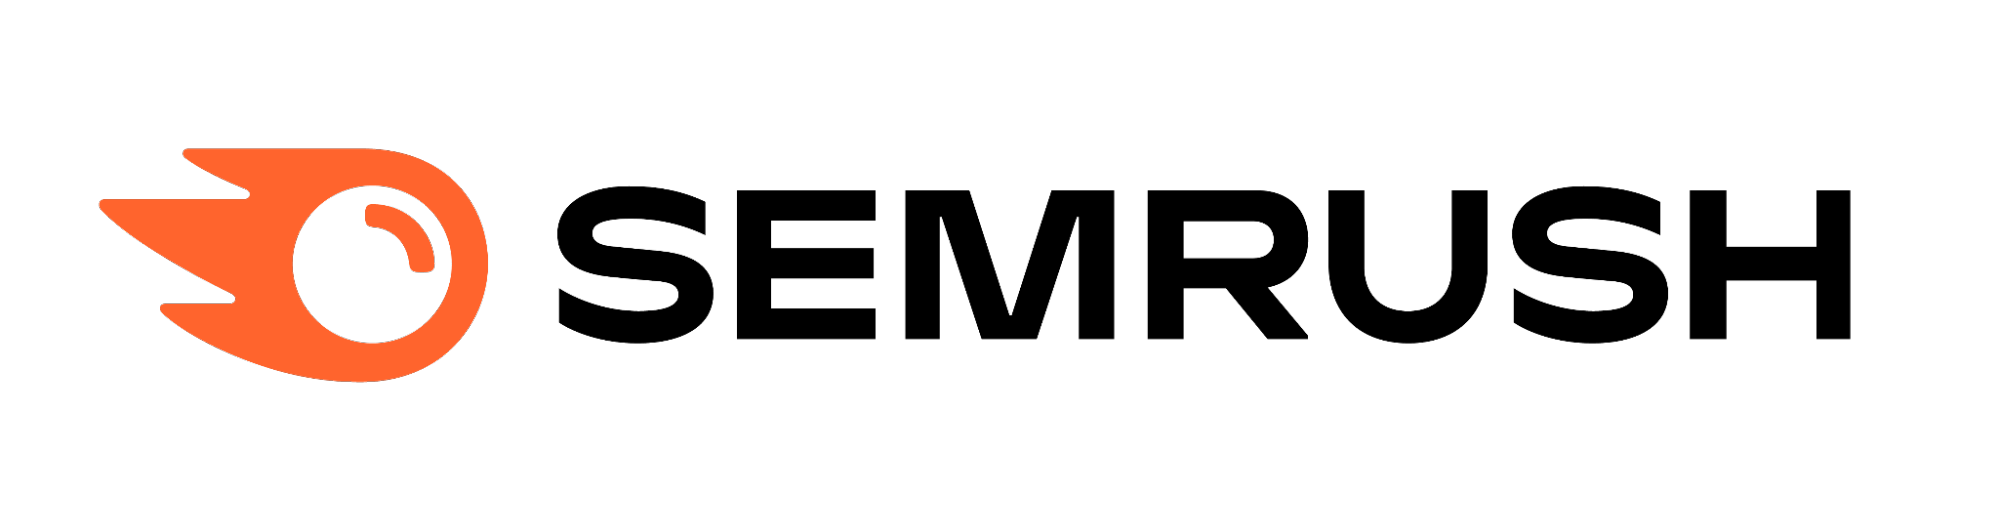 Logo da ferramenta de SEO chamada Semrush. O logo possui um desenho de uma bola com contorno laranja representando uma chama e ao lado o nome da solução escrito de preto